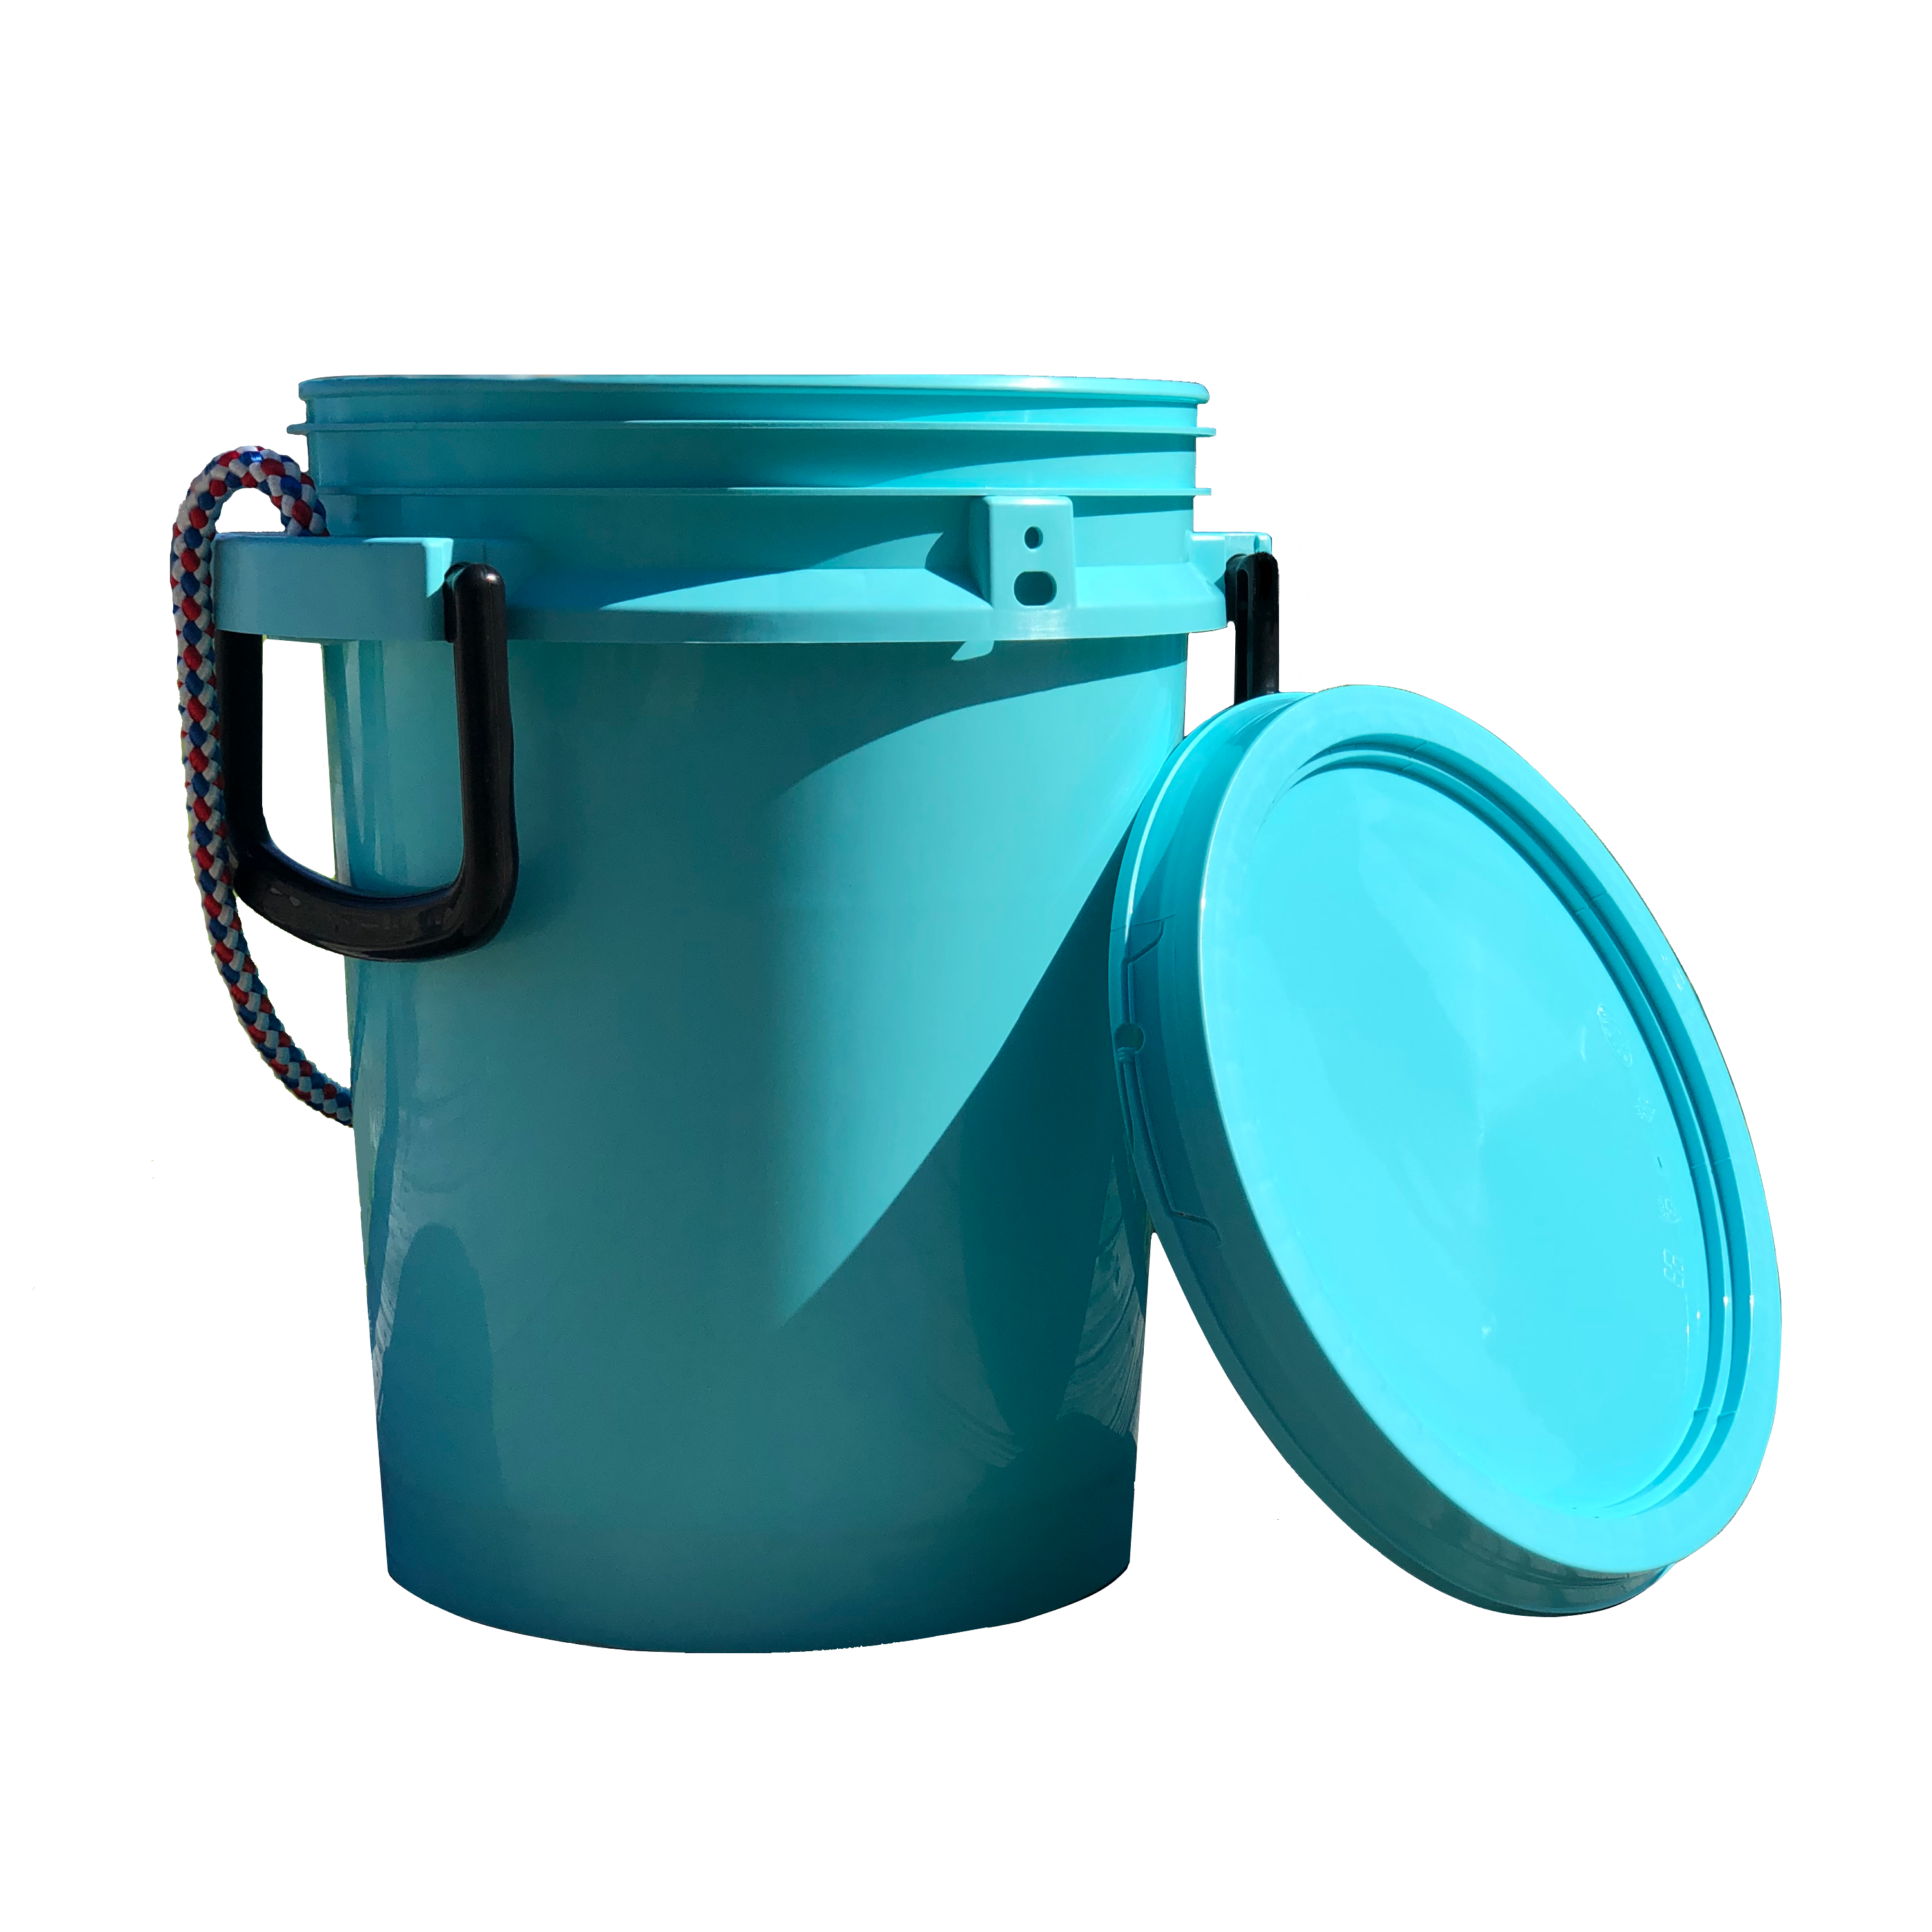 iSmart Bucket - 5 Gallon Bucket with Lid, Logo Printed